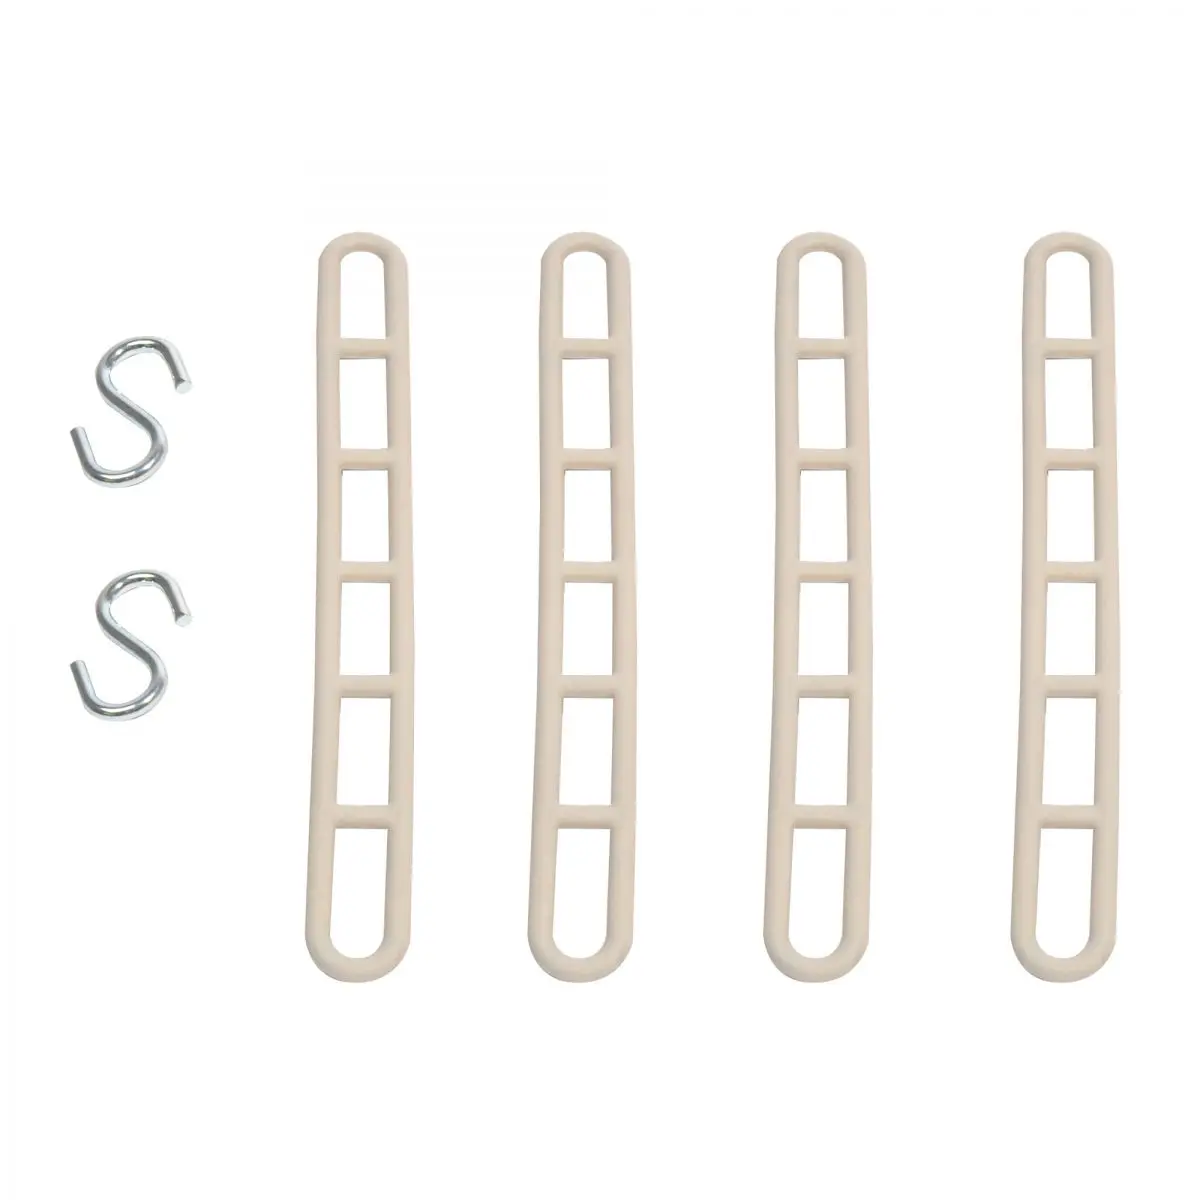 Bretele elastice, 20 cm, cu 2 carlige, 4 buc